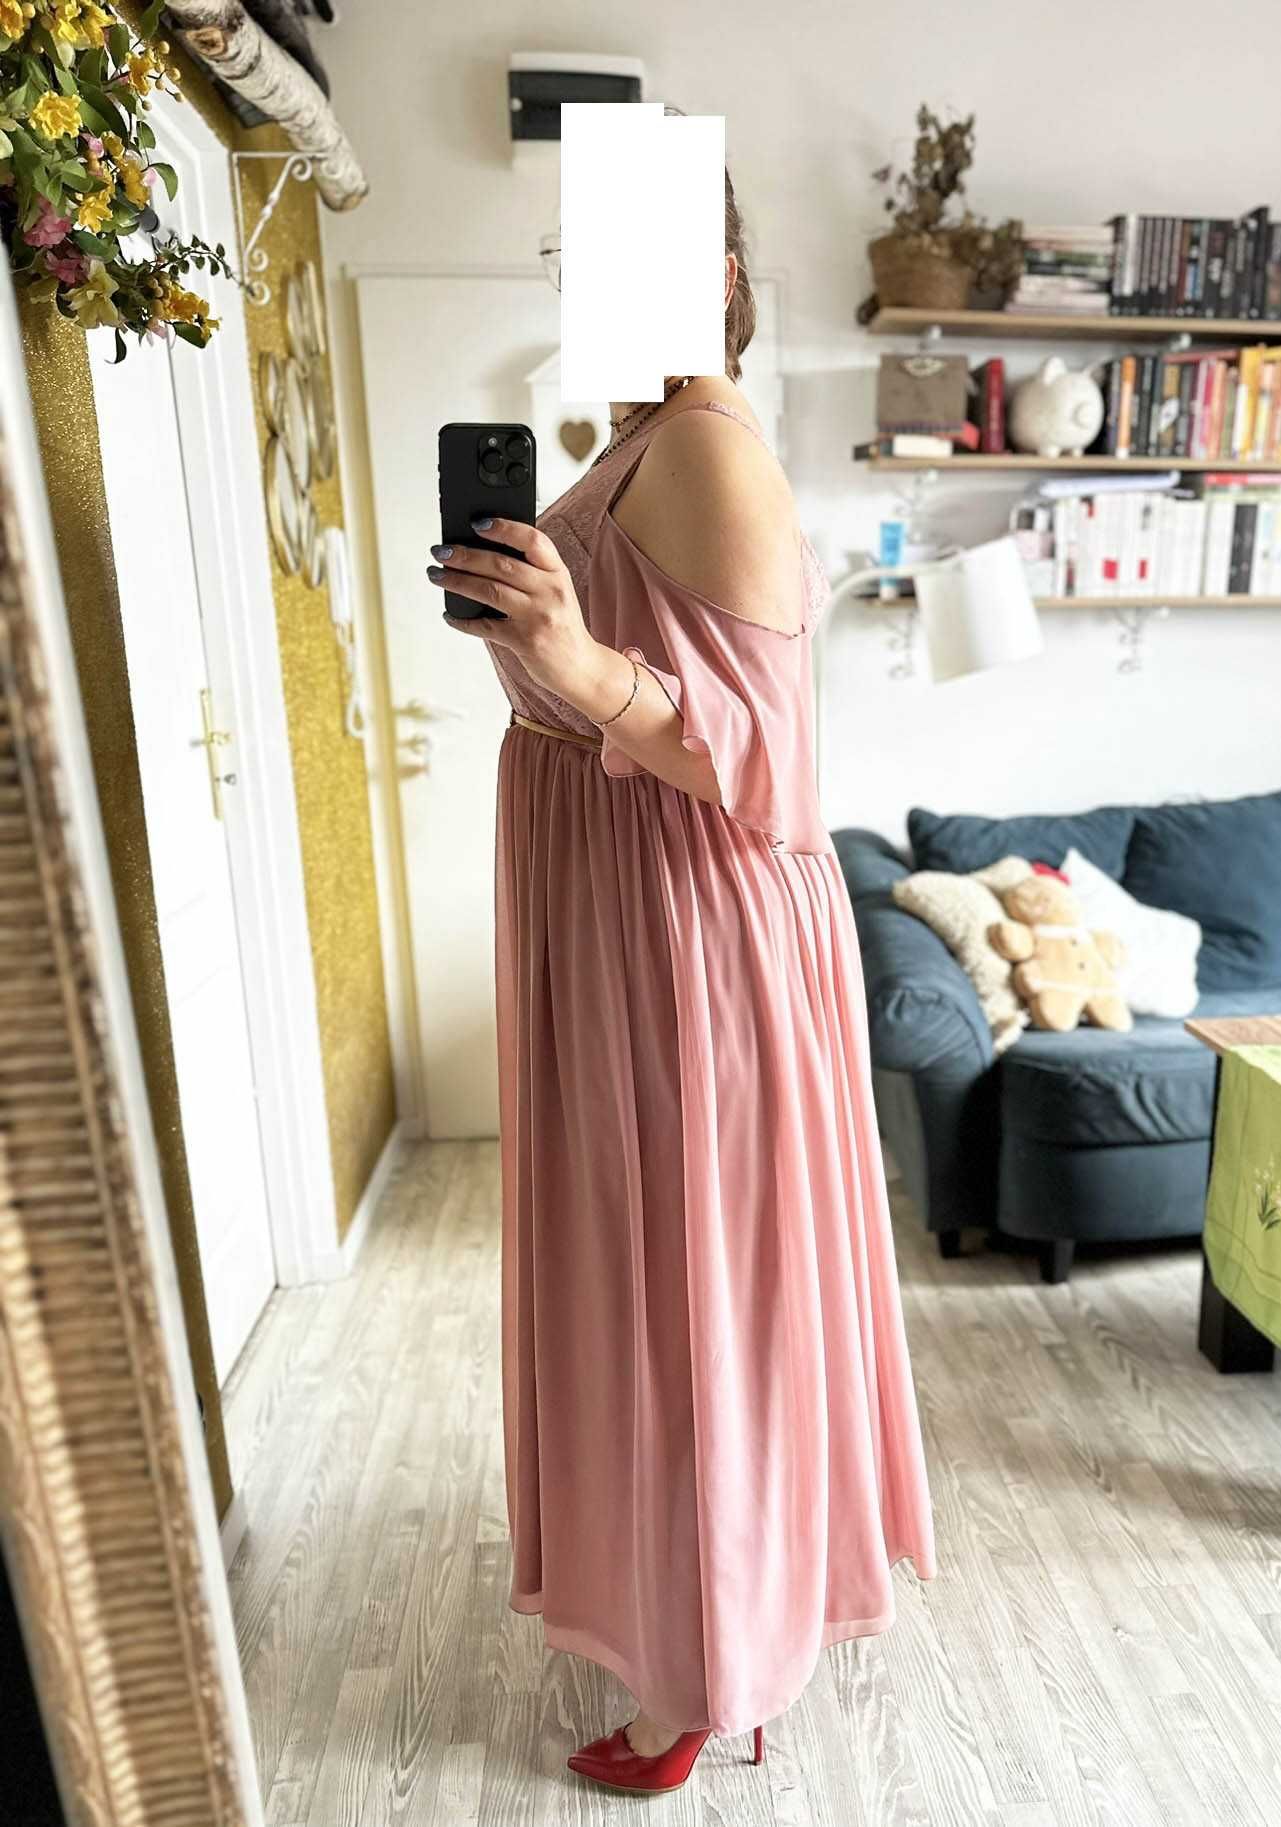 Różowa sukienka maxi z koronką 48 50